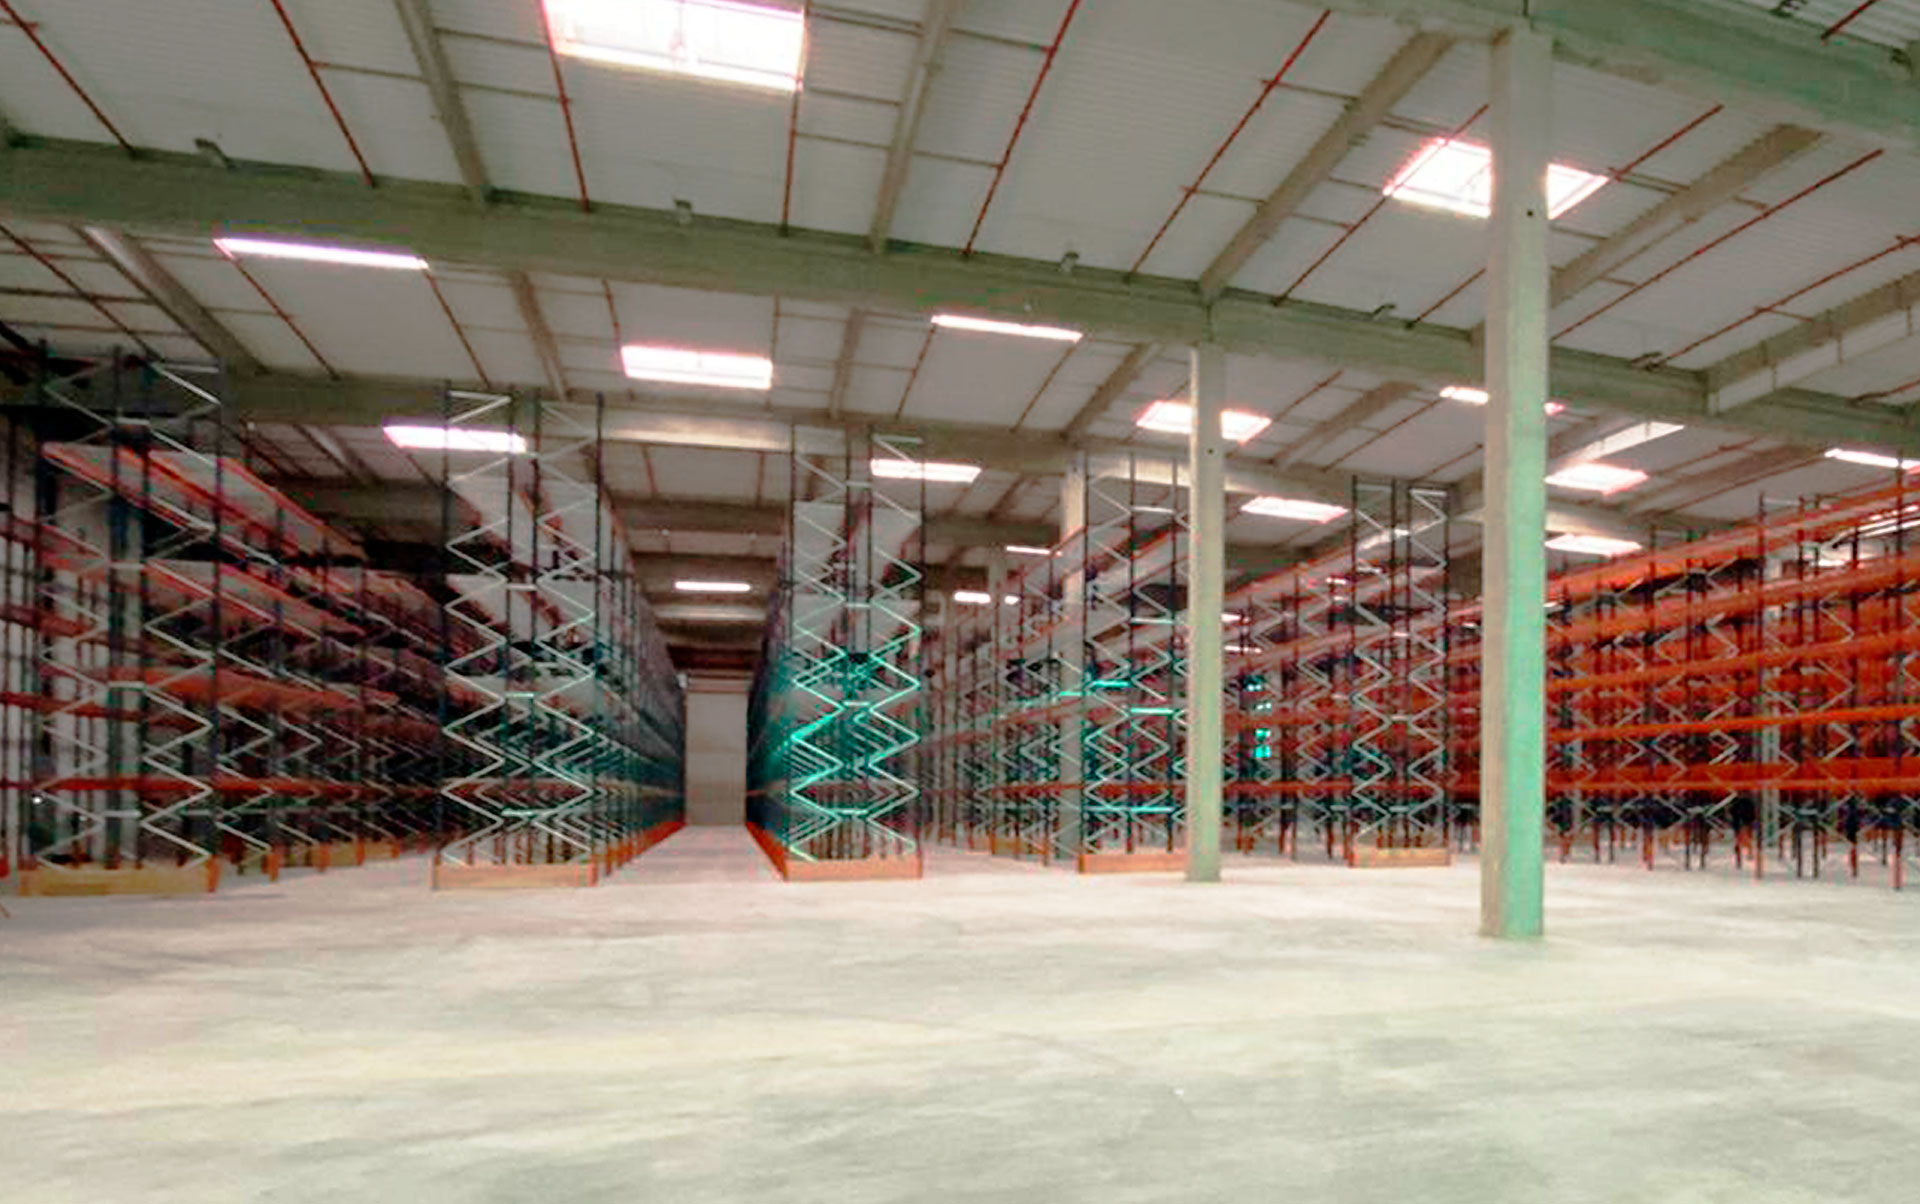 Téréva在法国的仓库有超过23500个托盘的容量